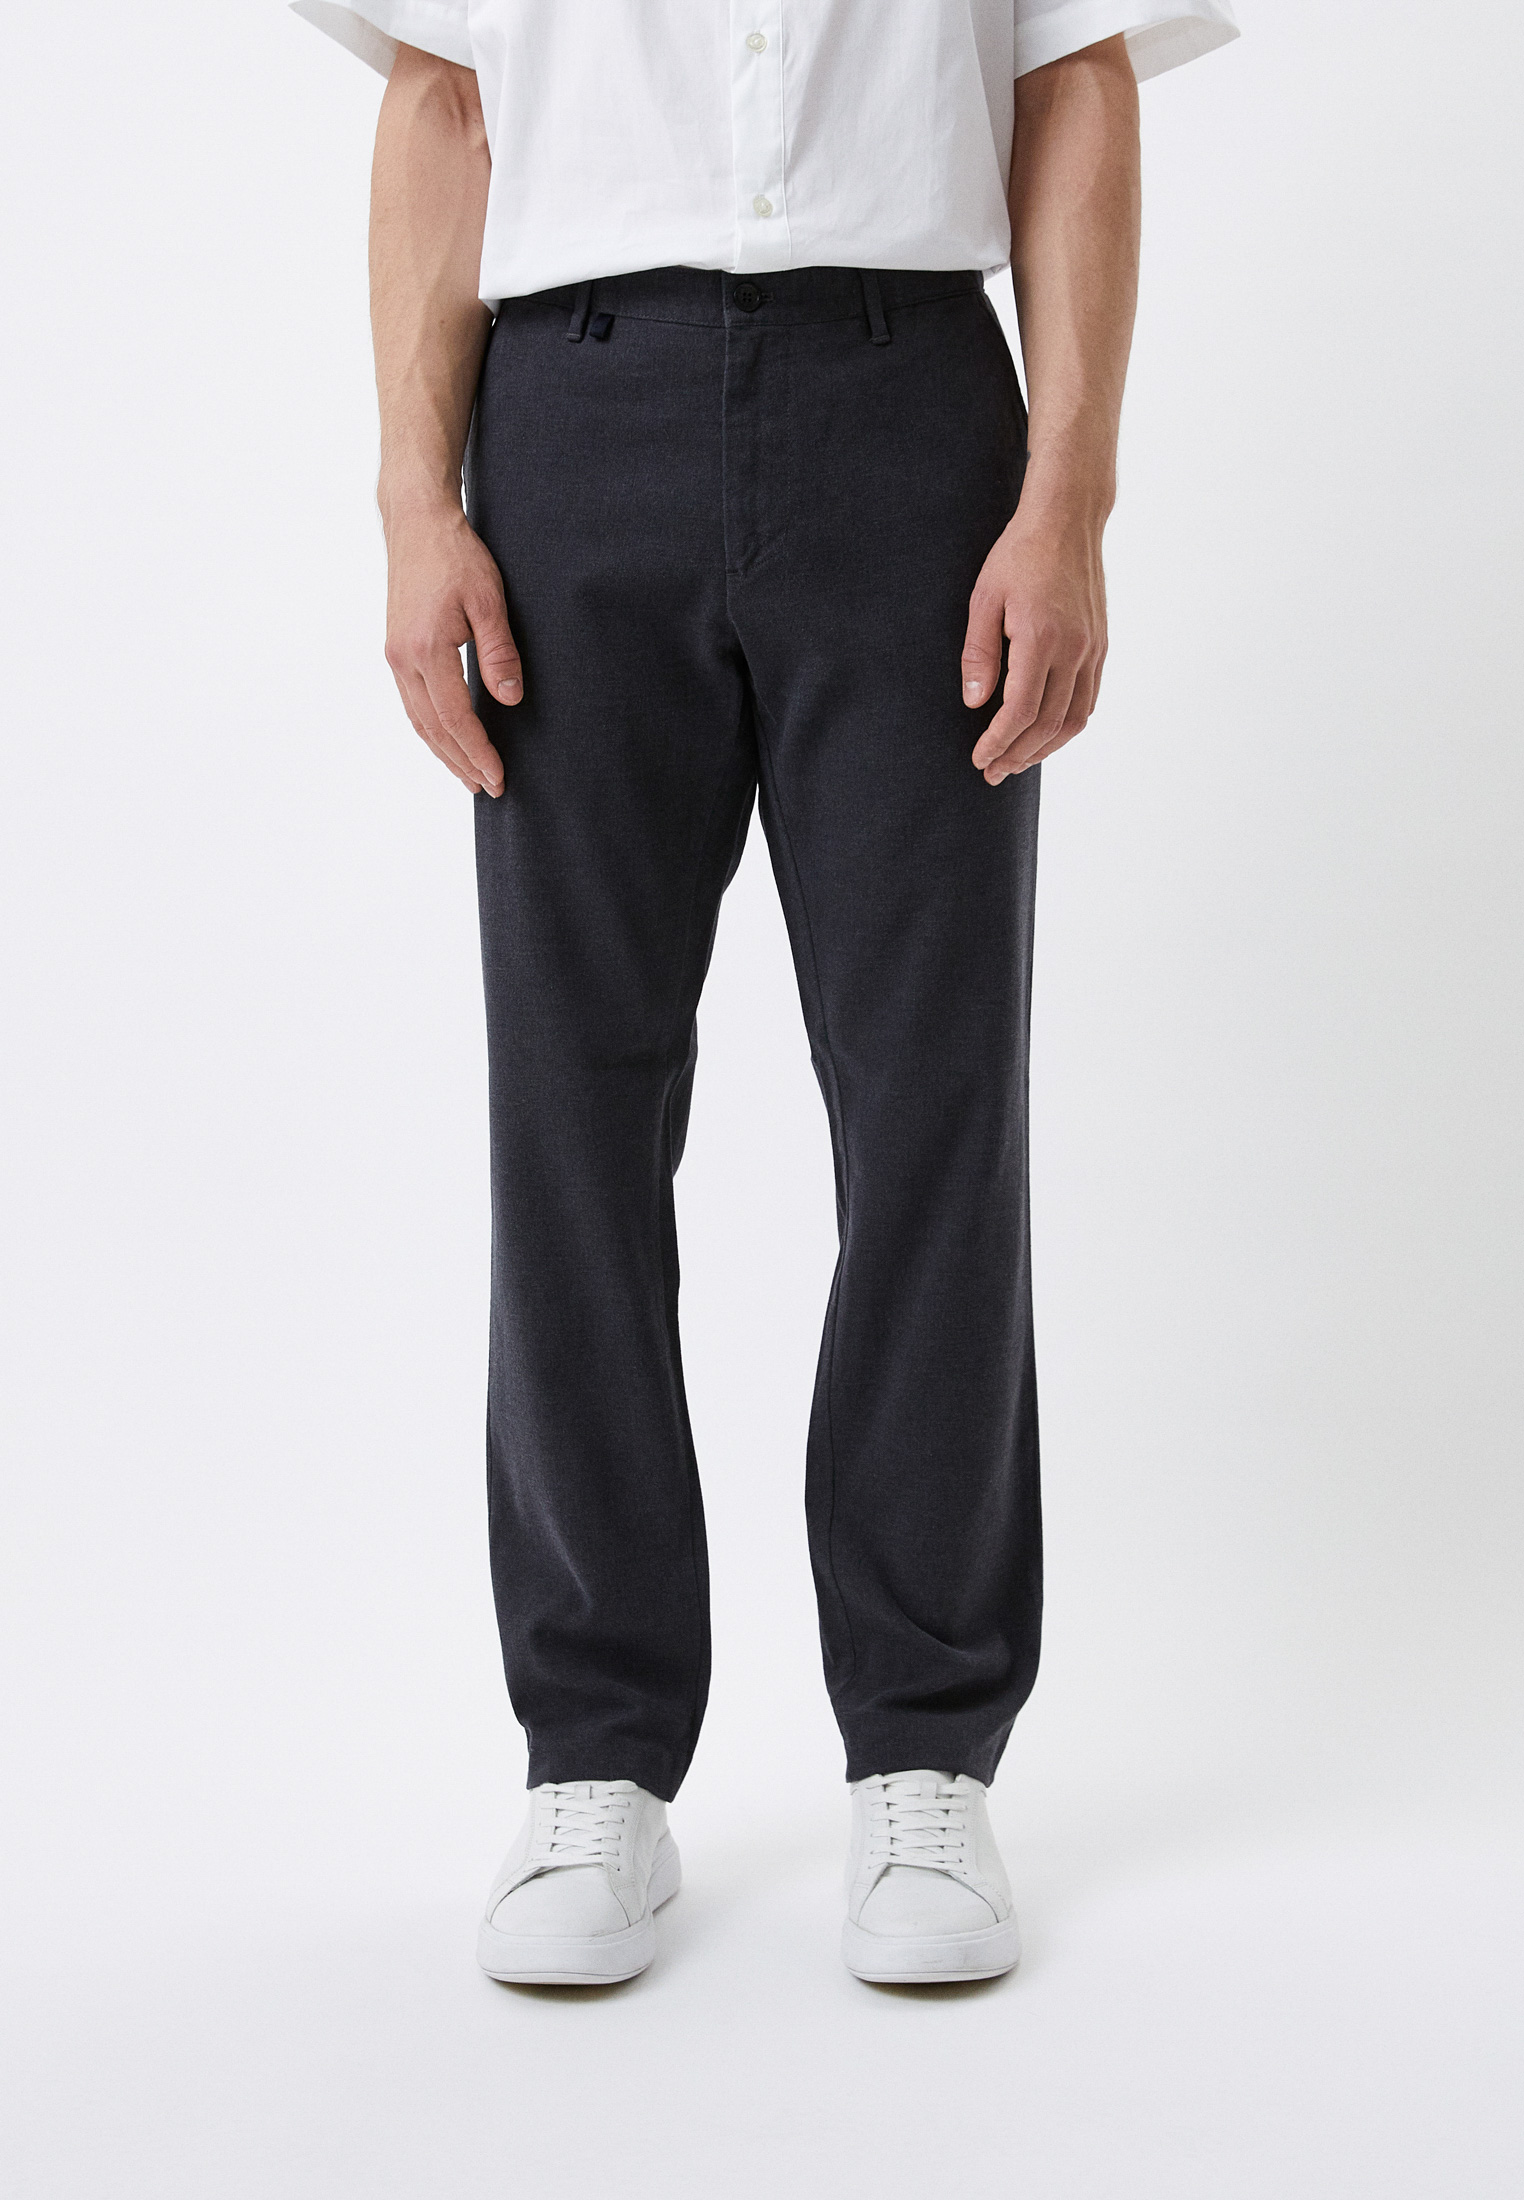 Мужские повседневные брюки Bikkembergs (Биккембергс) CP22BGDSB135: изображение 1